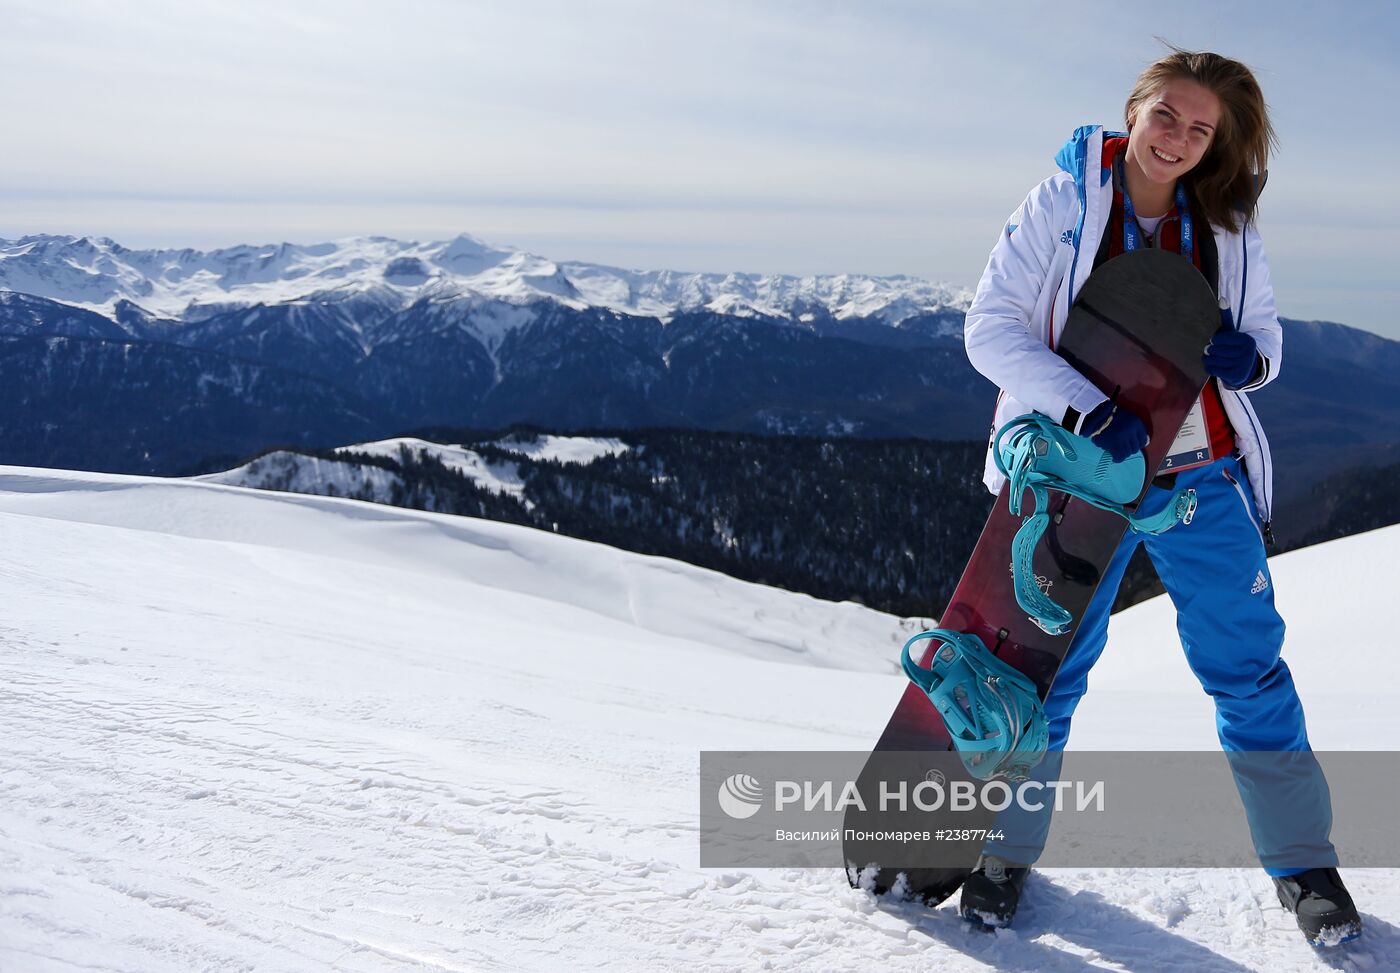 Бронзовый призер Олимпиады в Сочи скелетонистка Елена Никитина